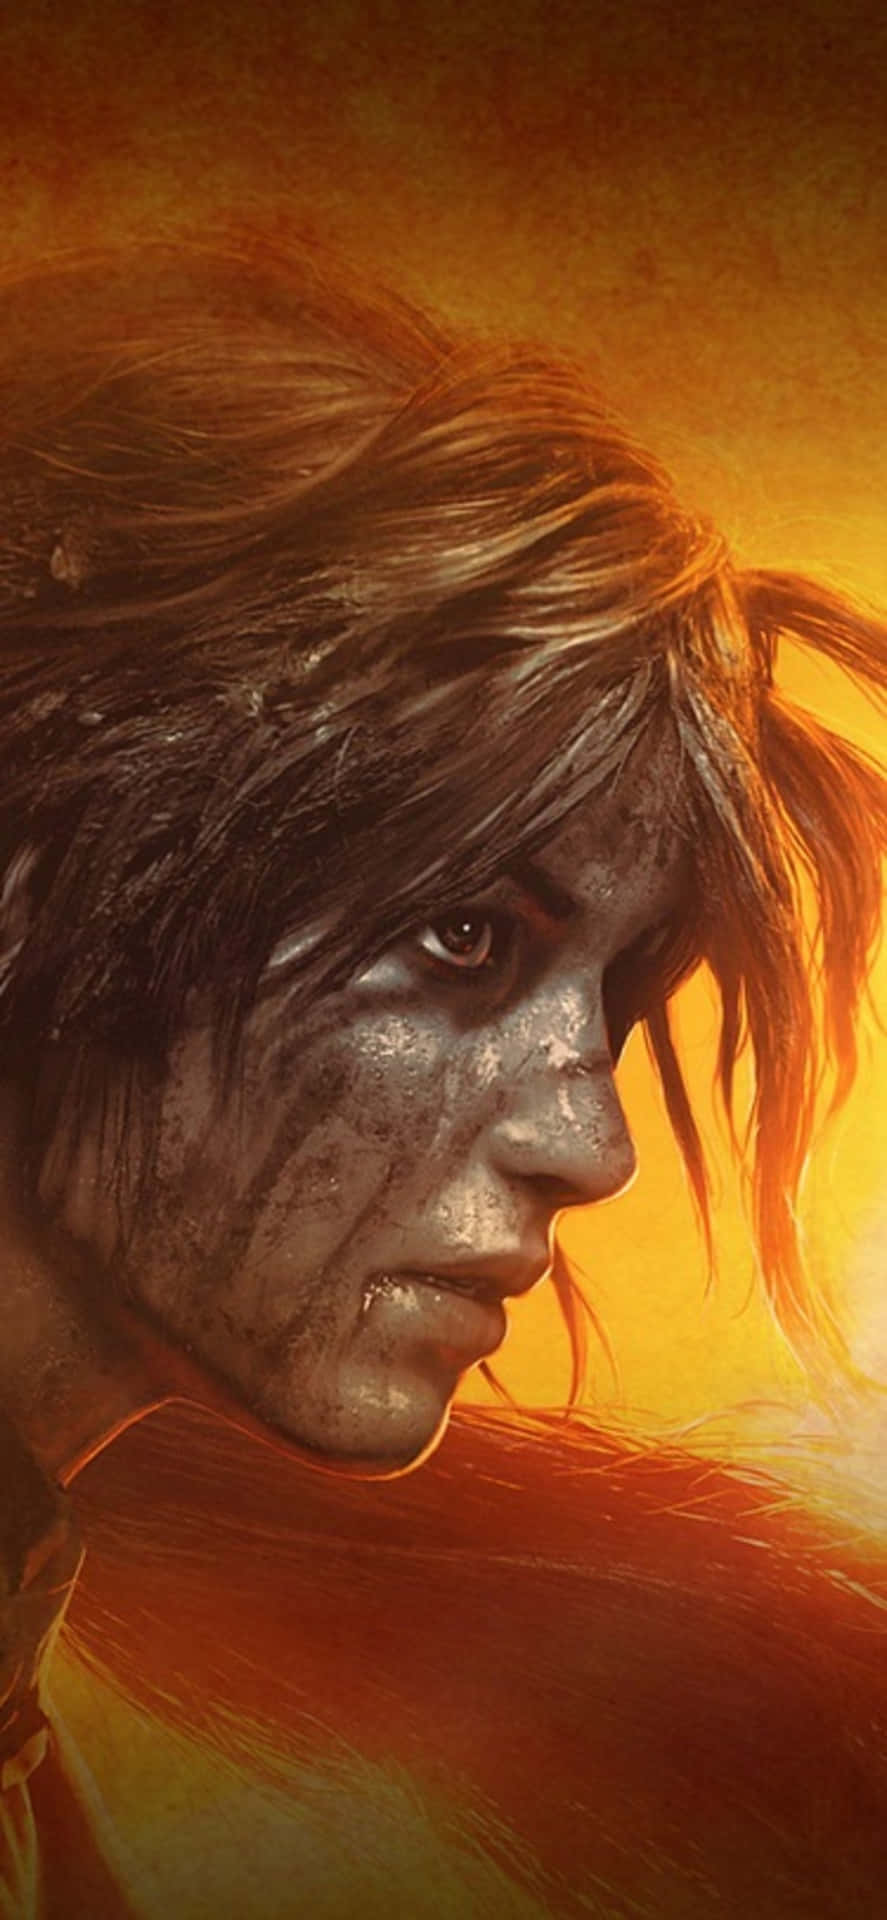 Descubrelos Secretos De Shadow Of The Tomb Raider Con Iphone X